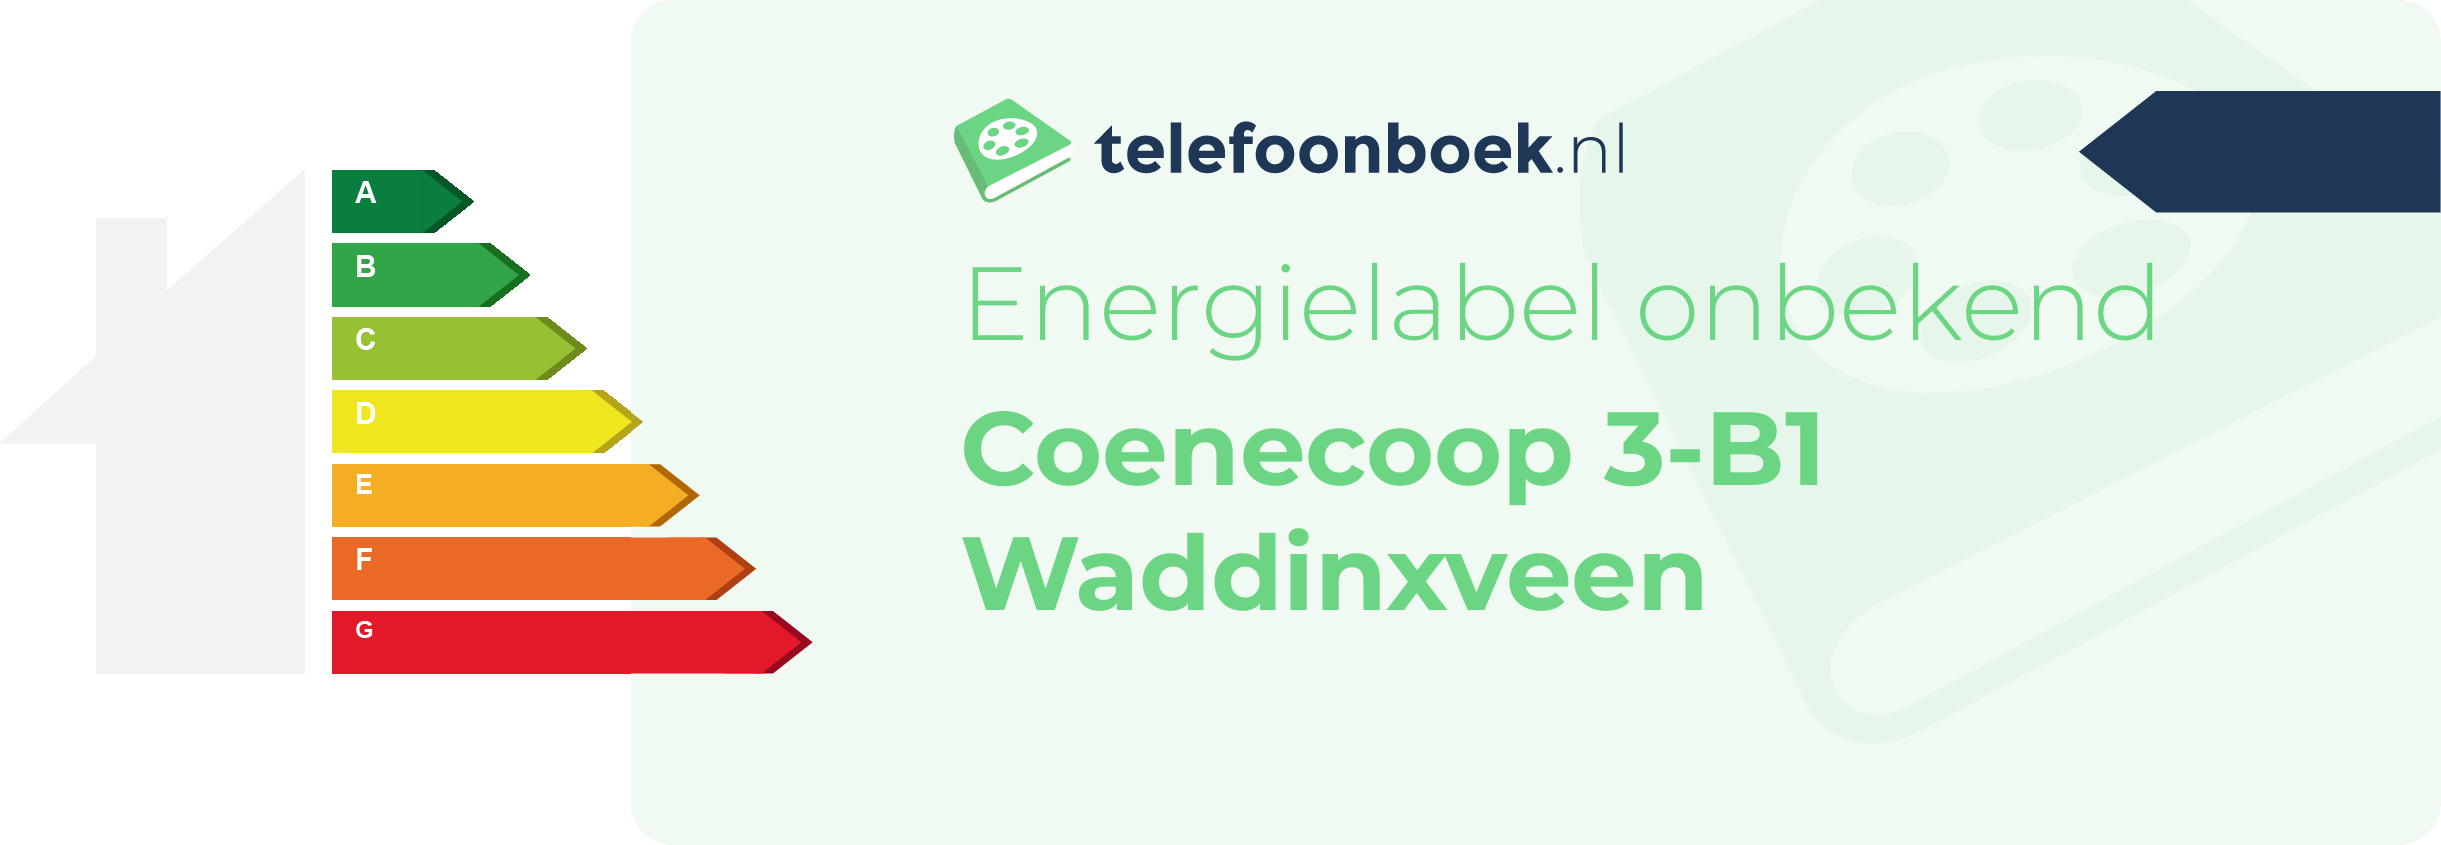 Energielabel Coenecoop 3-B1 Waddinxveen